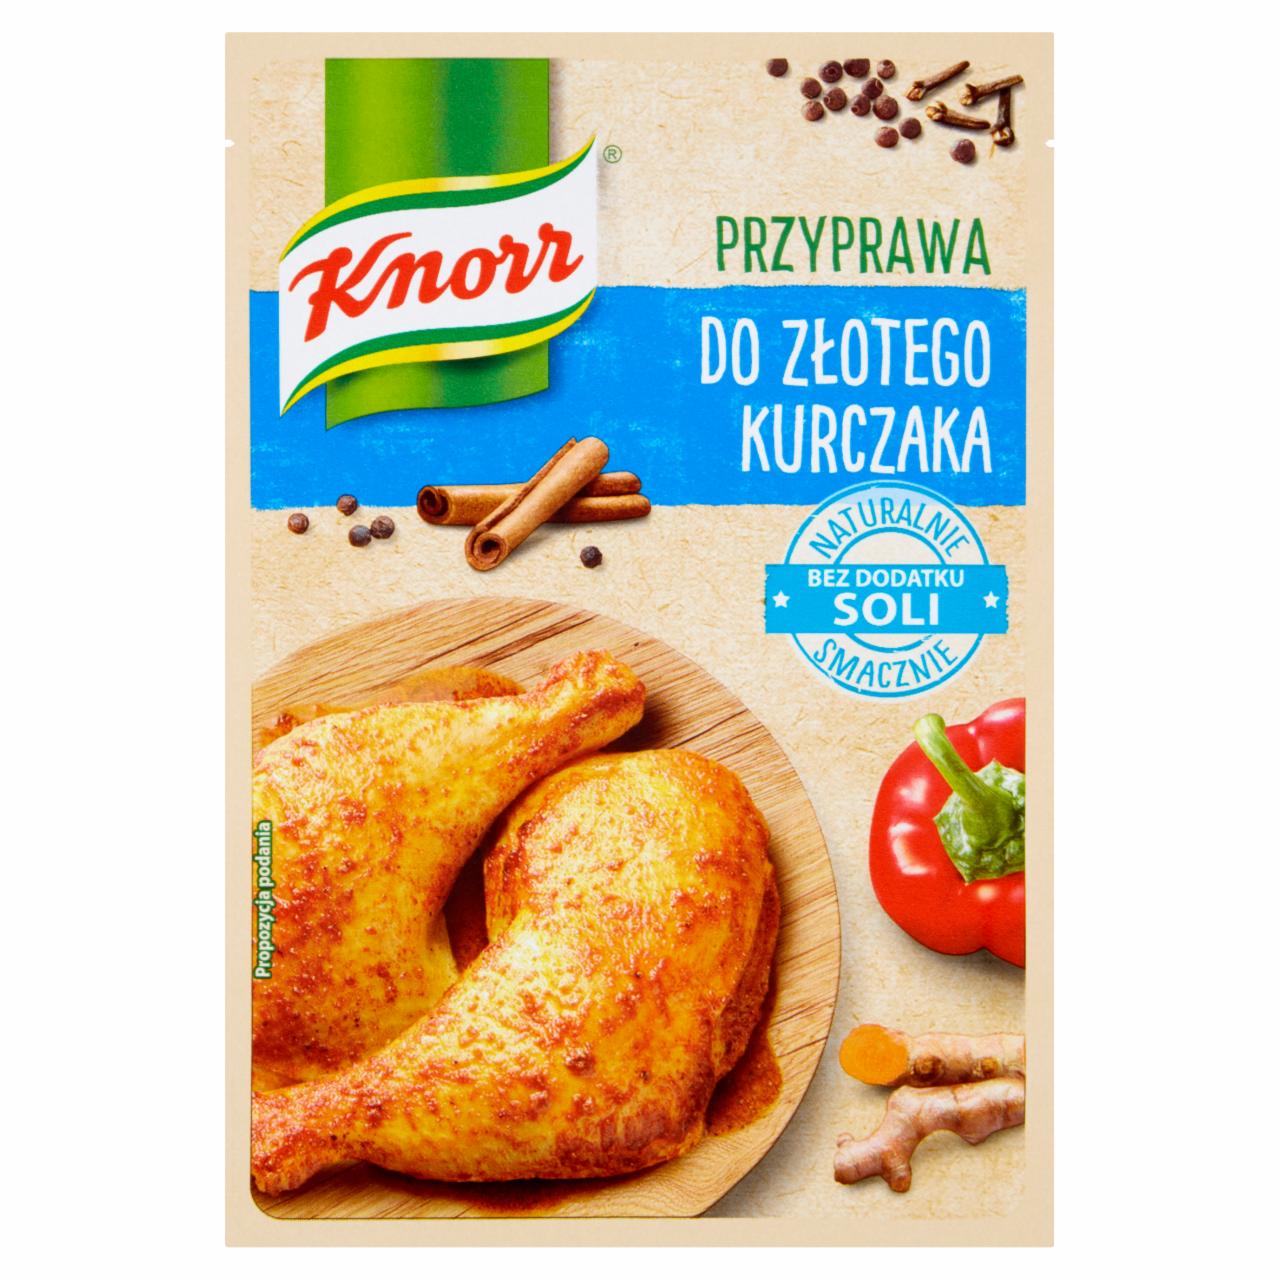 Zdjęcia - Knorr Przyprawa do złotego kurczaka 18 g